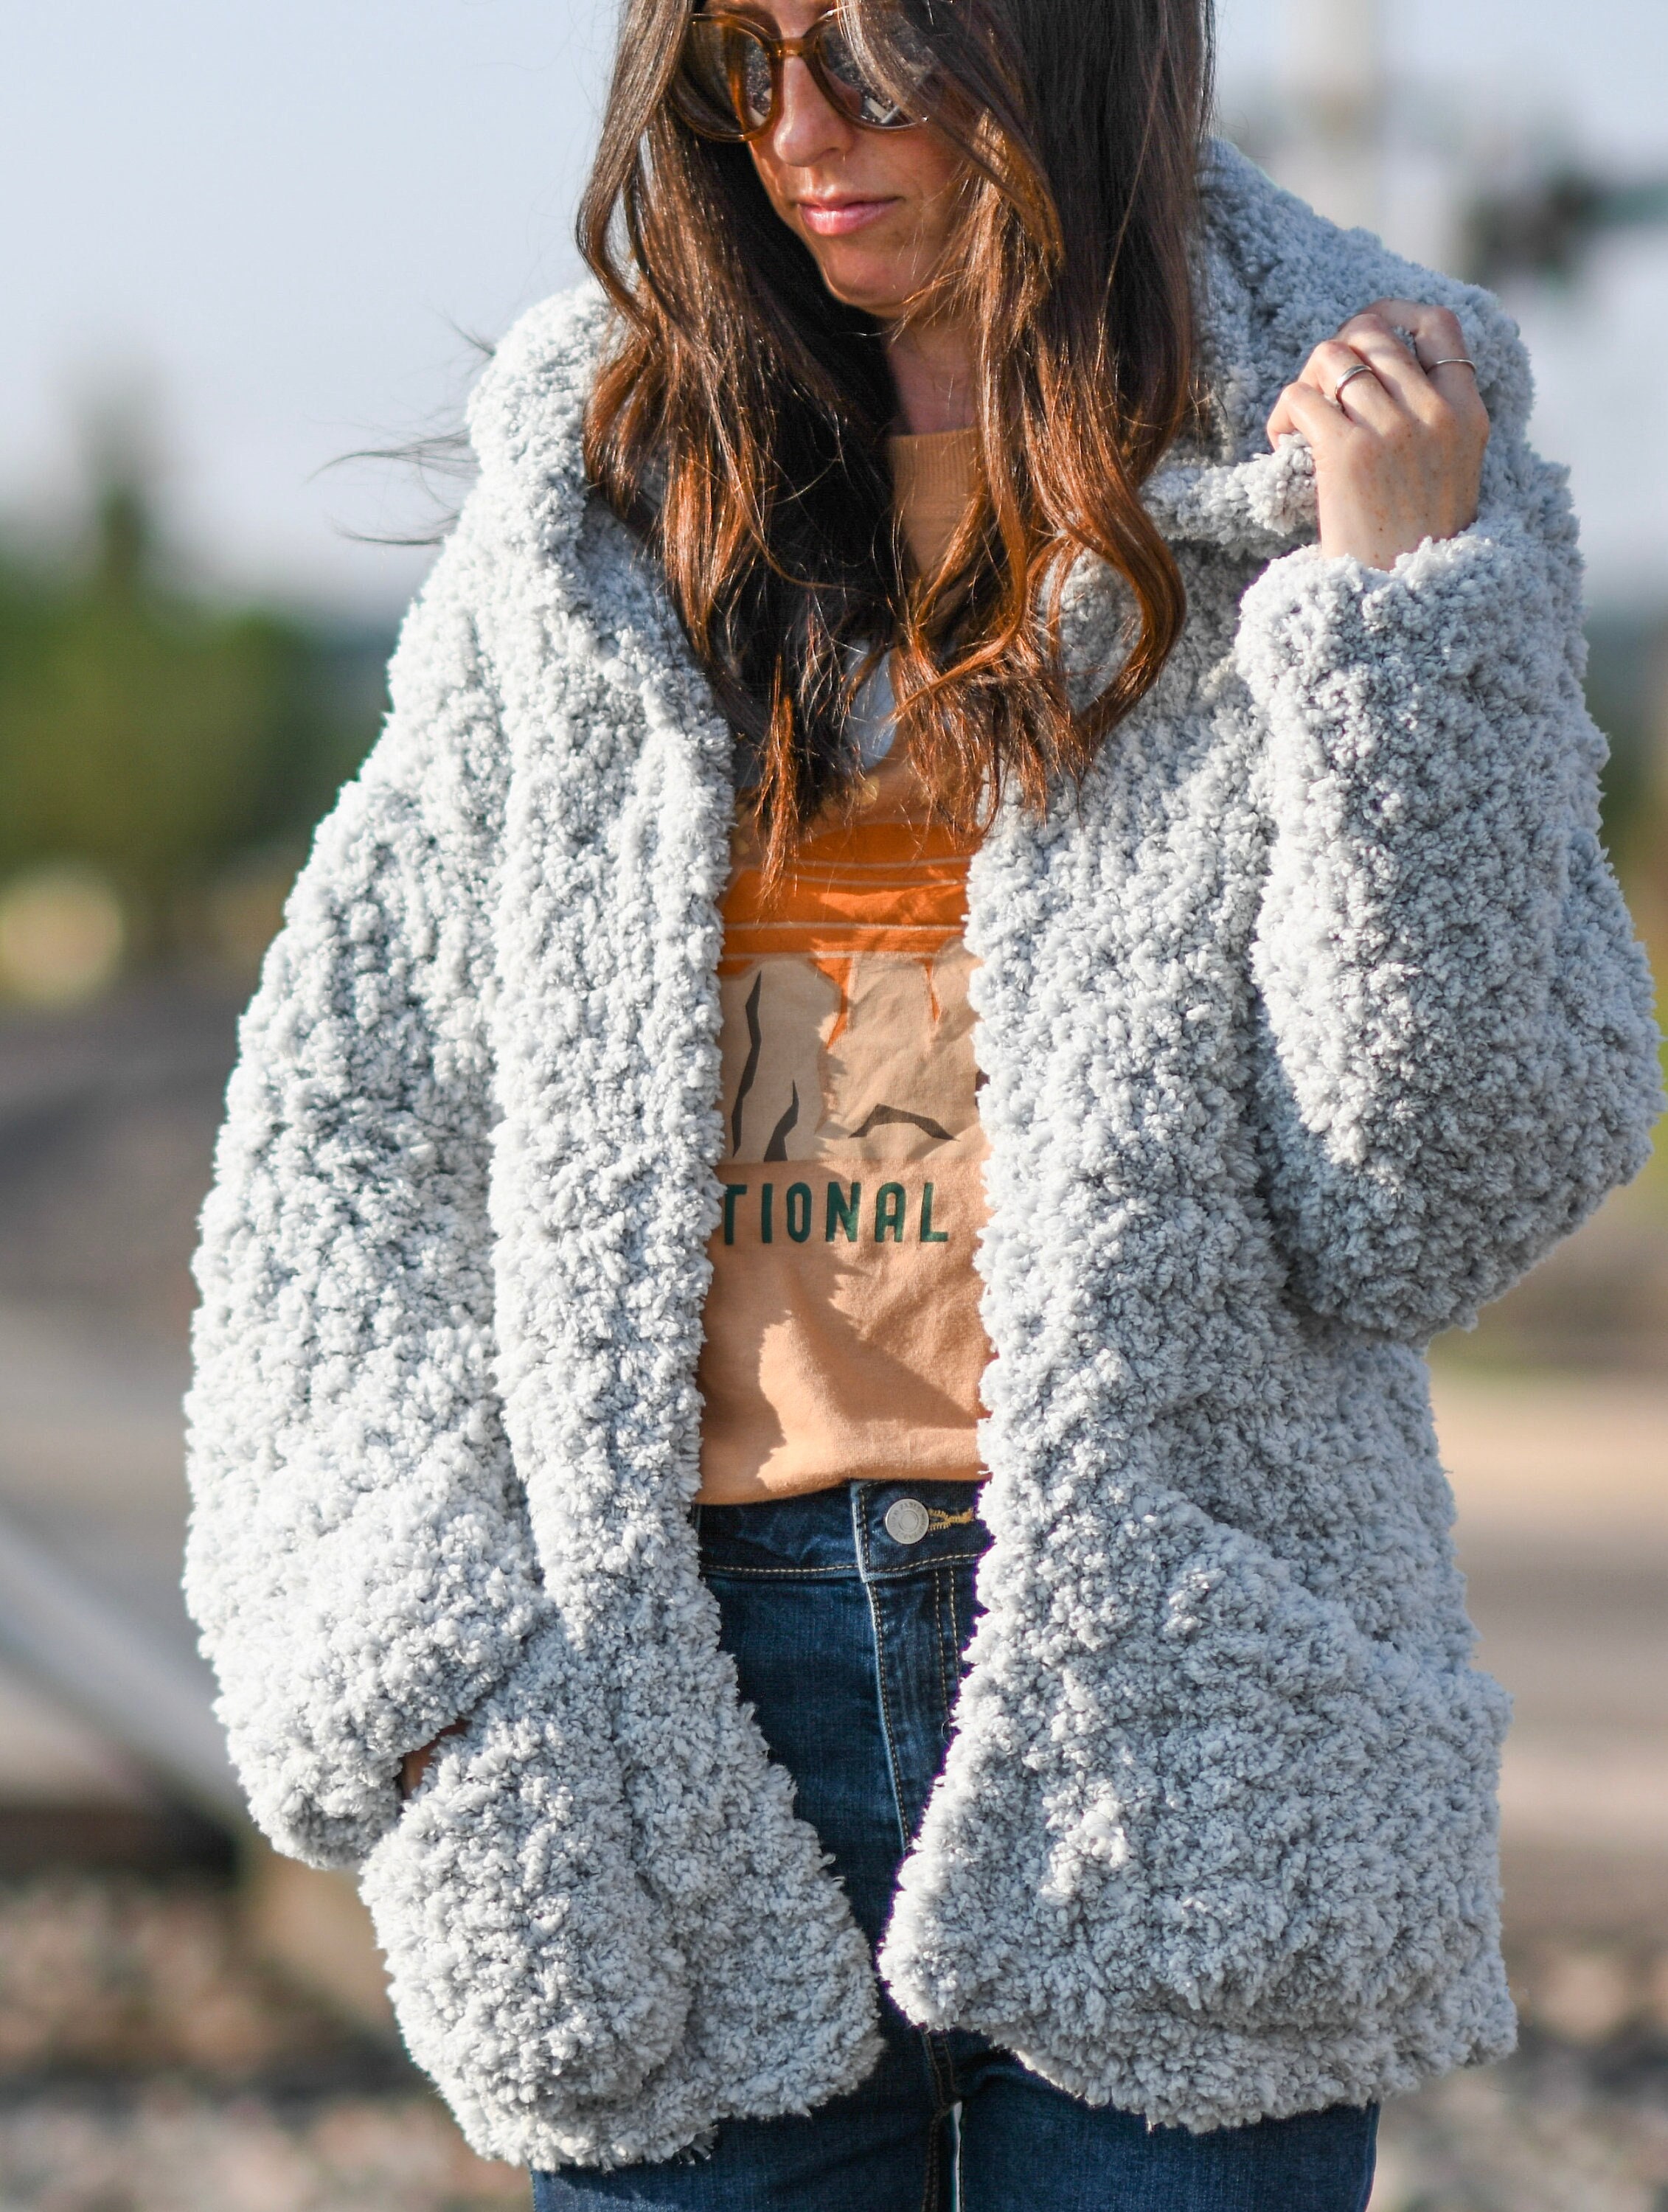 Women Fluffy Teddy Bear Fleece Coat Collared Zip Jacket Outwear